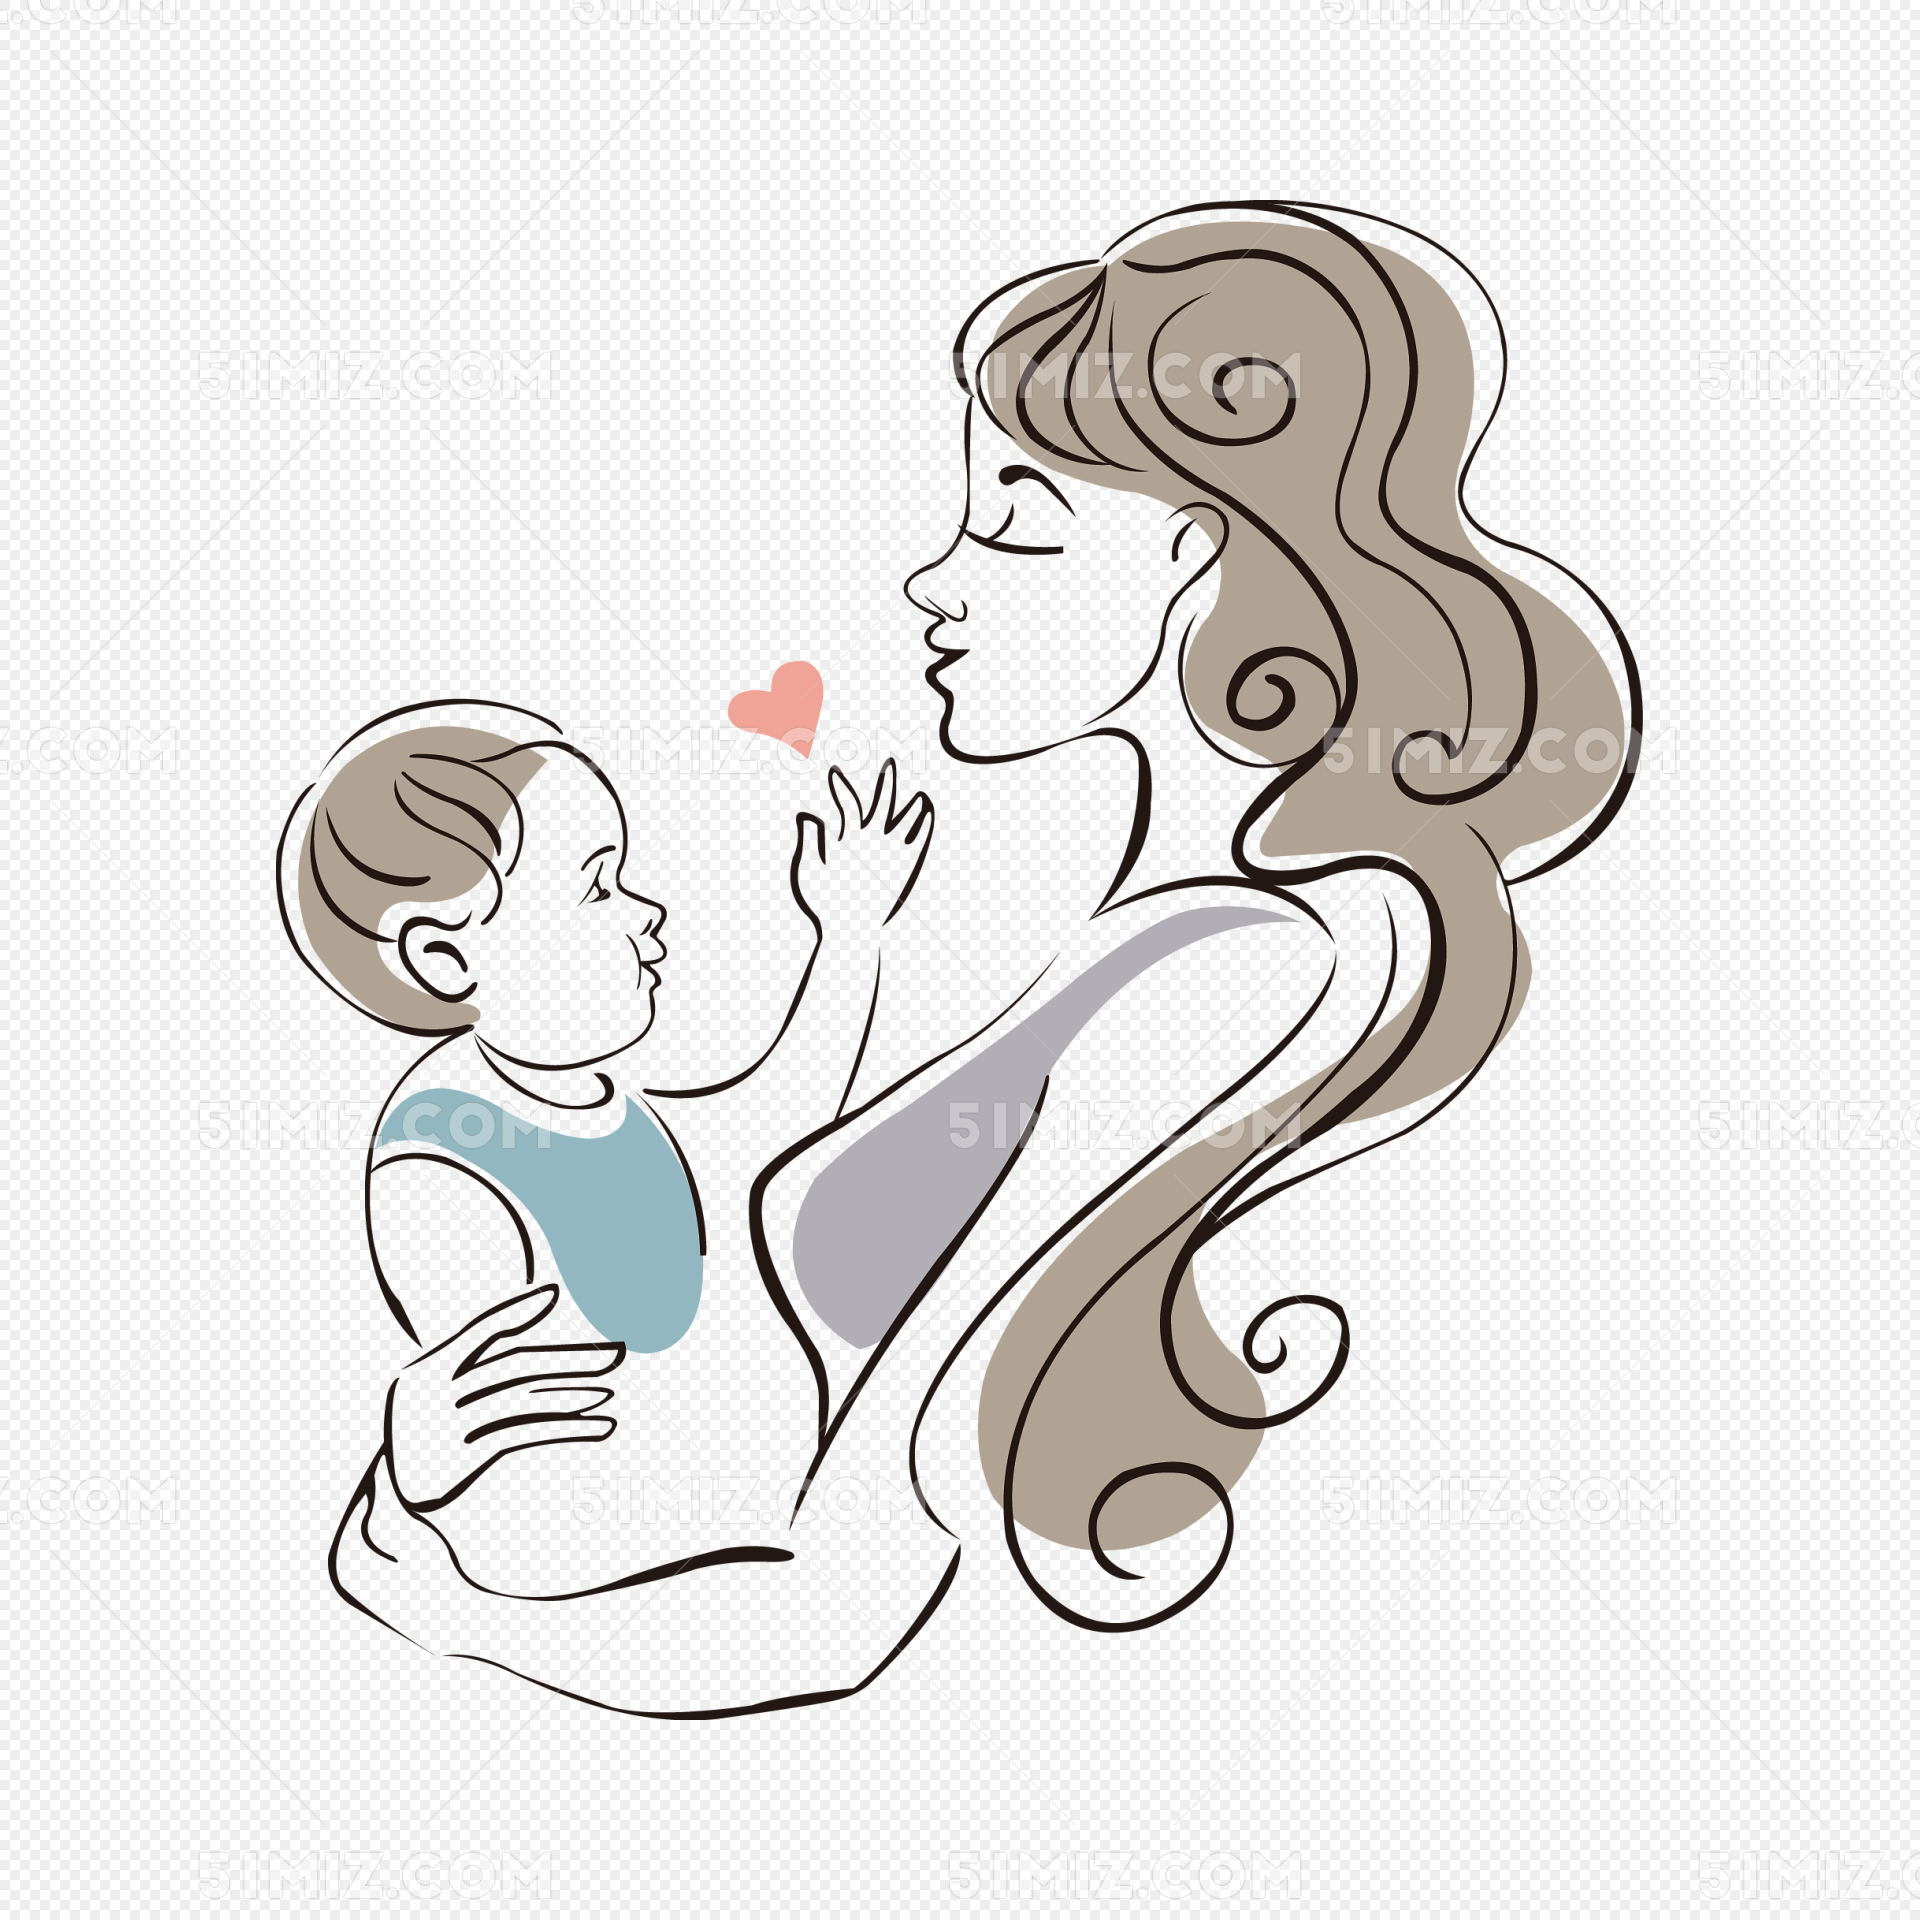 أم، رسم كاريكتوري، تصوير، ب، إمرأة, أم تحمل الطفل, والقمر الأصفر, والنجوم الصفراء PNG وملف PSD ...